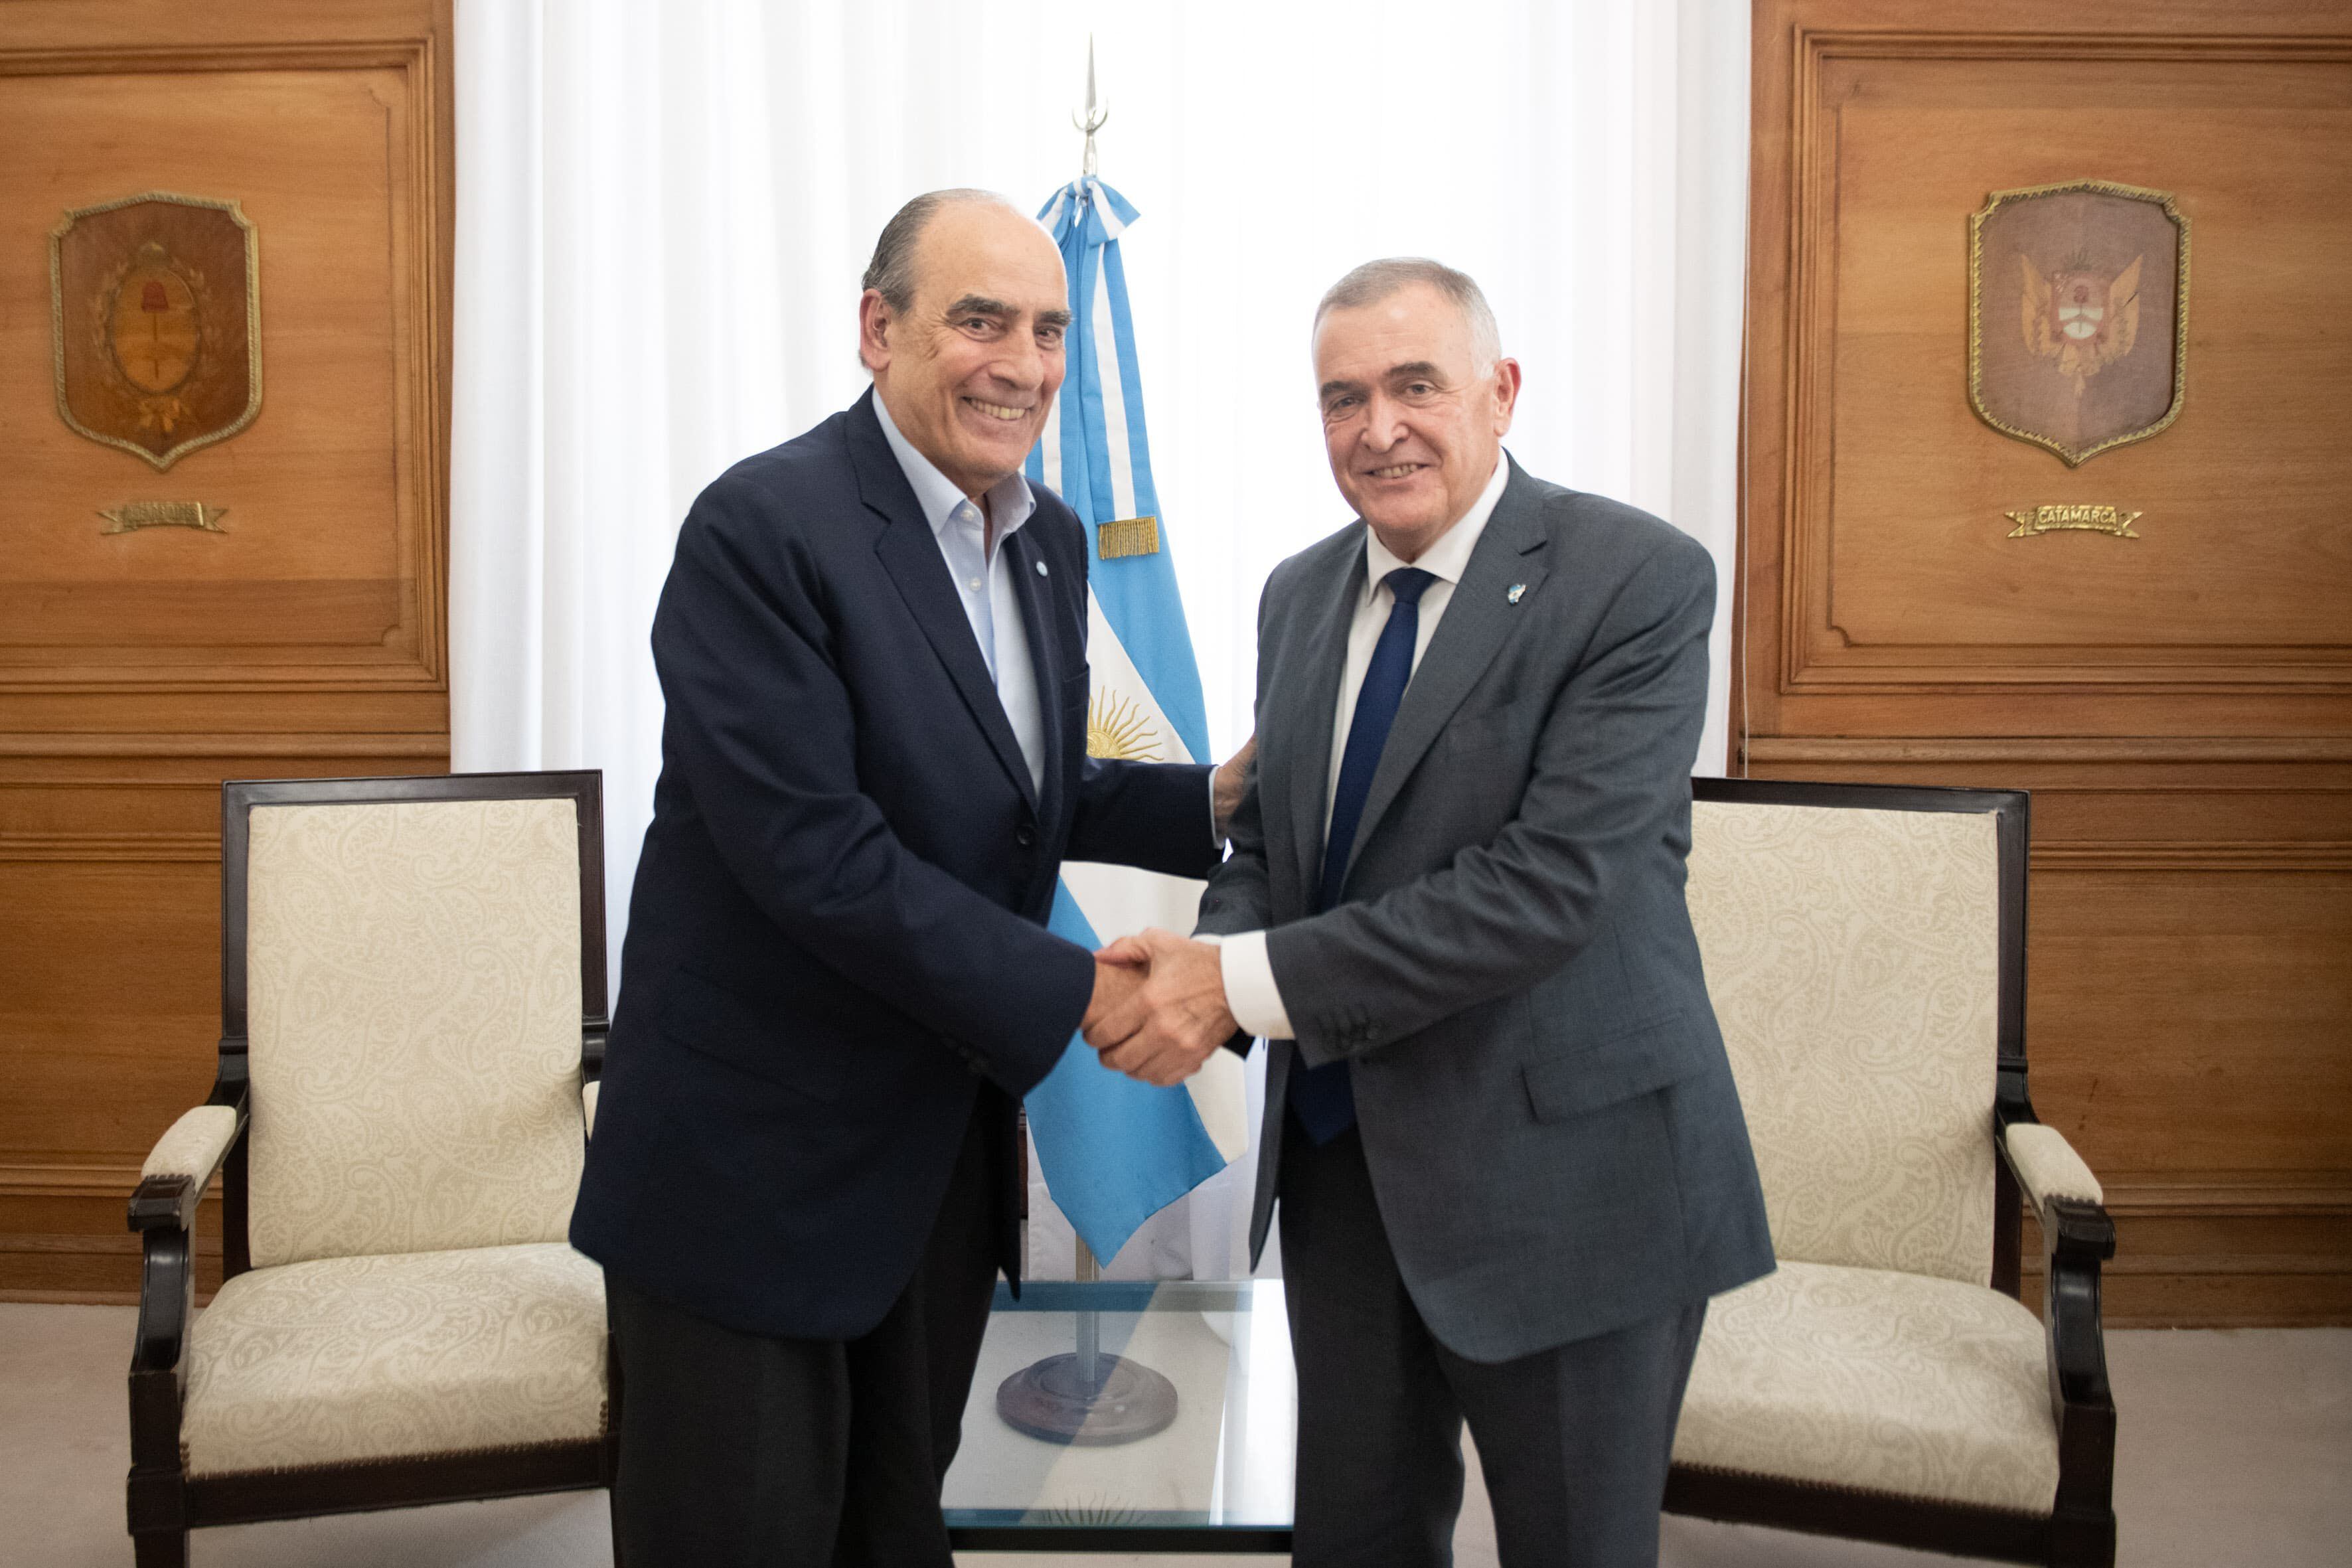 El ministro del Interior, Guillermo Francos, y el gobernador de Tucumán, Osvaldo Jaldo